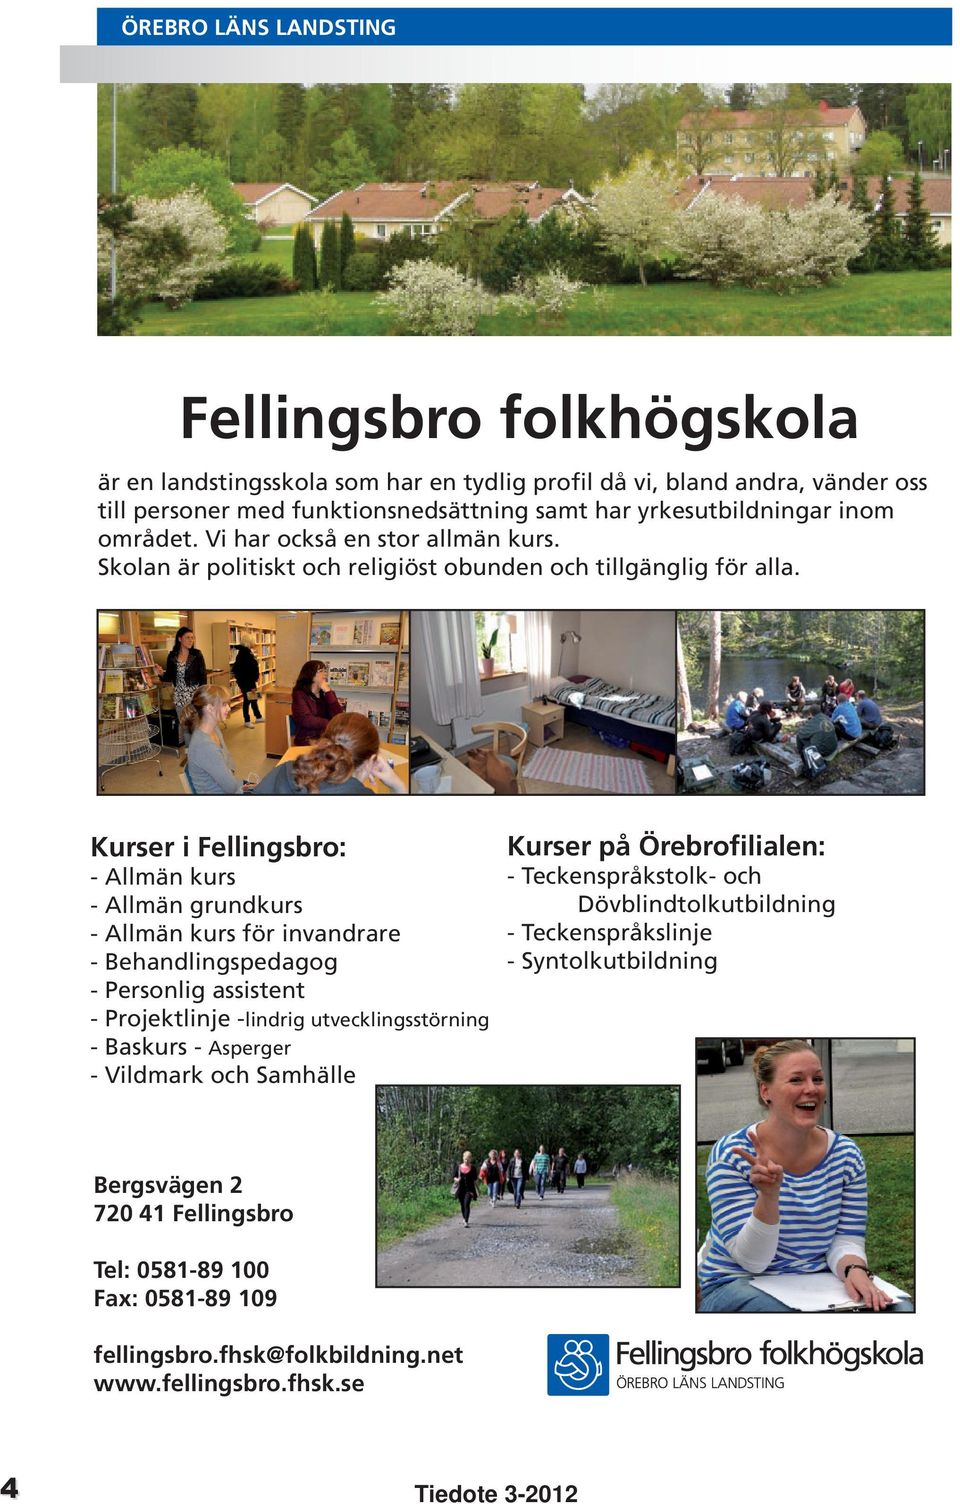 Kurser i Fellingsbro: - Allmän kurs - Allmän grundkurs - Allmän kurs för invandrare - Behandlingspedagog - Personlig assistent - Projektlinje -lindrig utvecklingsstörning - Baskurs - Asperger -